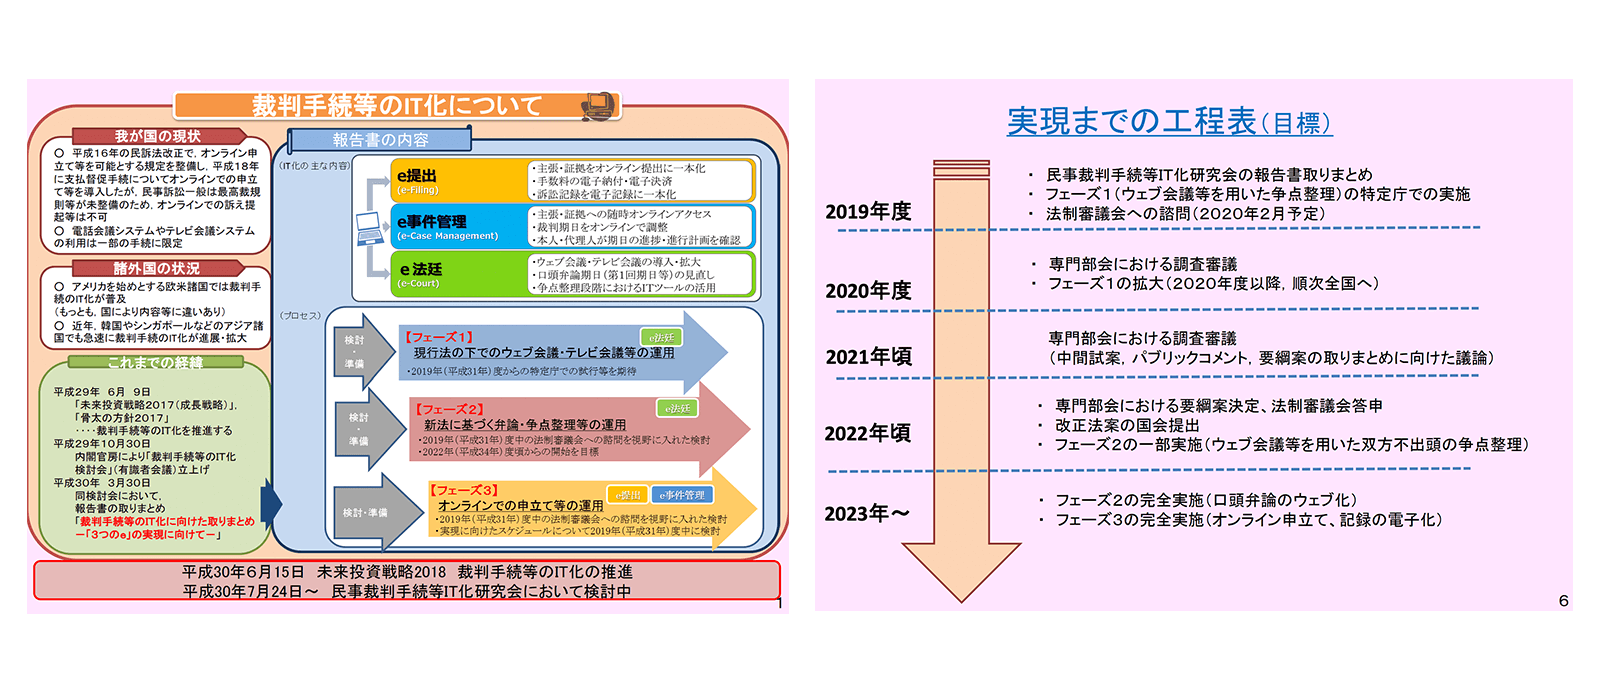 民事訴訟手続のＩＴ化の検討状況 https://www.kantei.go.jp/jp/singi/keizaisaisei/saiban/dai9/siryou2.pdf 2020年2月20日最終アクセス